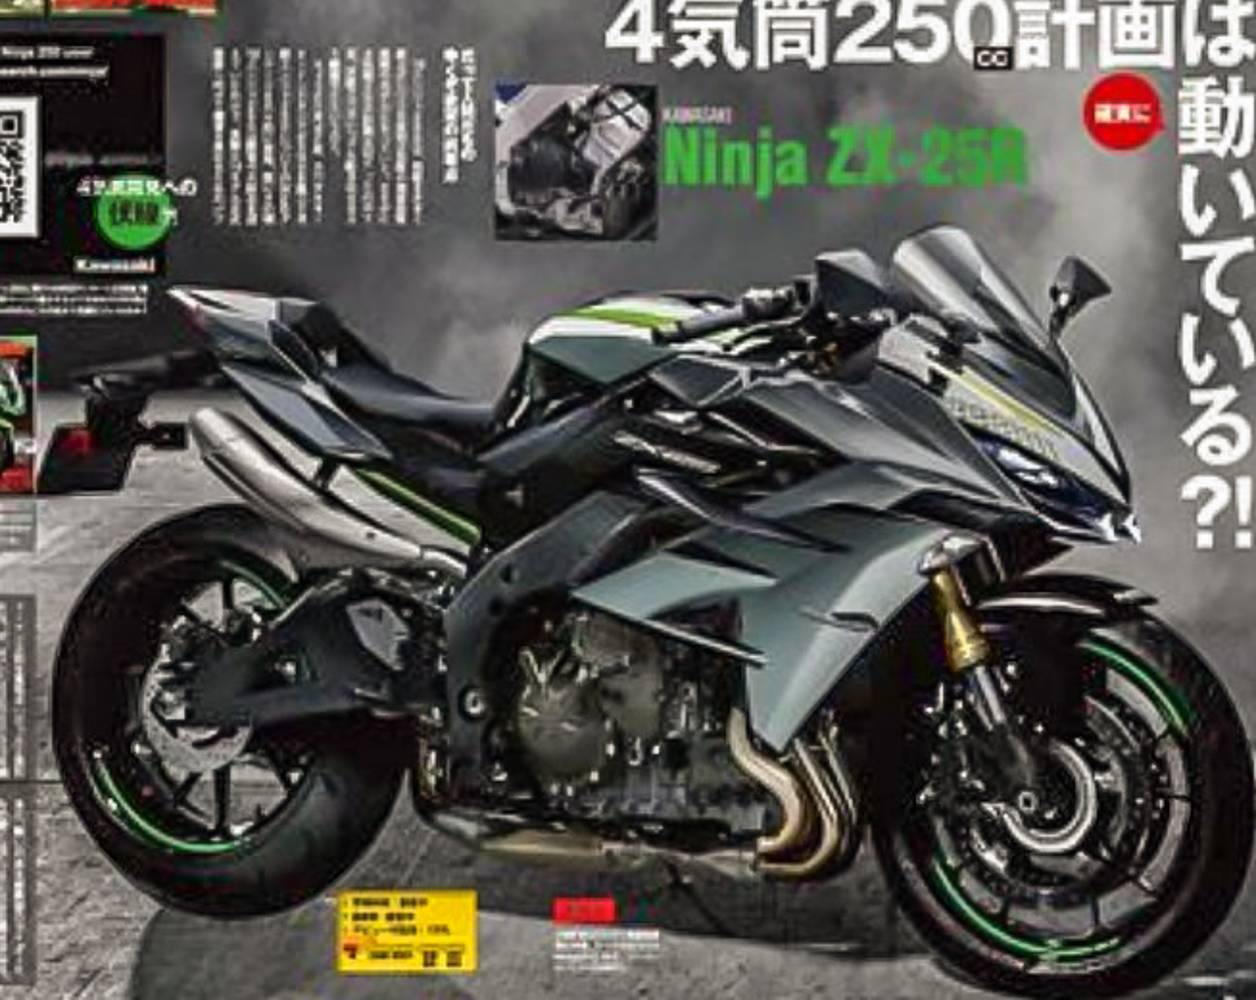 Hot Penampakan Kawasaki Ninja 250 Mesin 4 Silinder Berlabel Zx